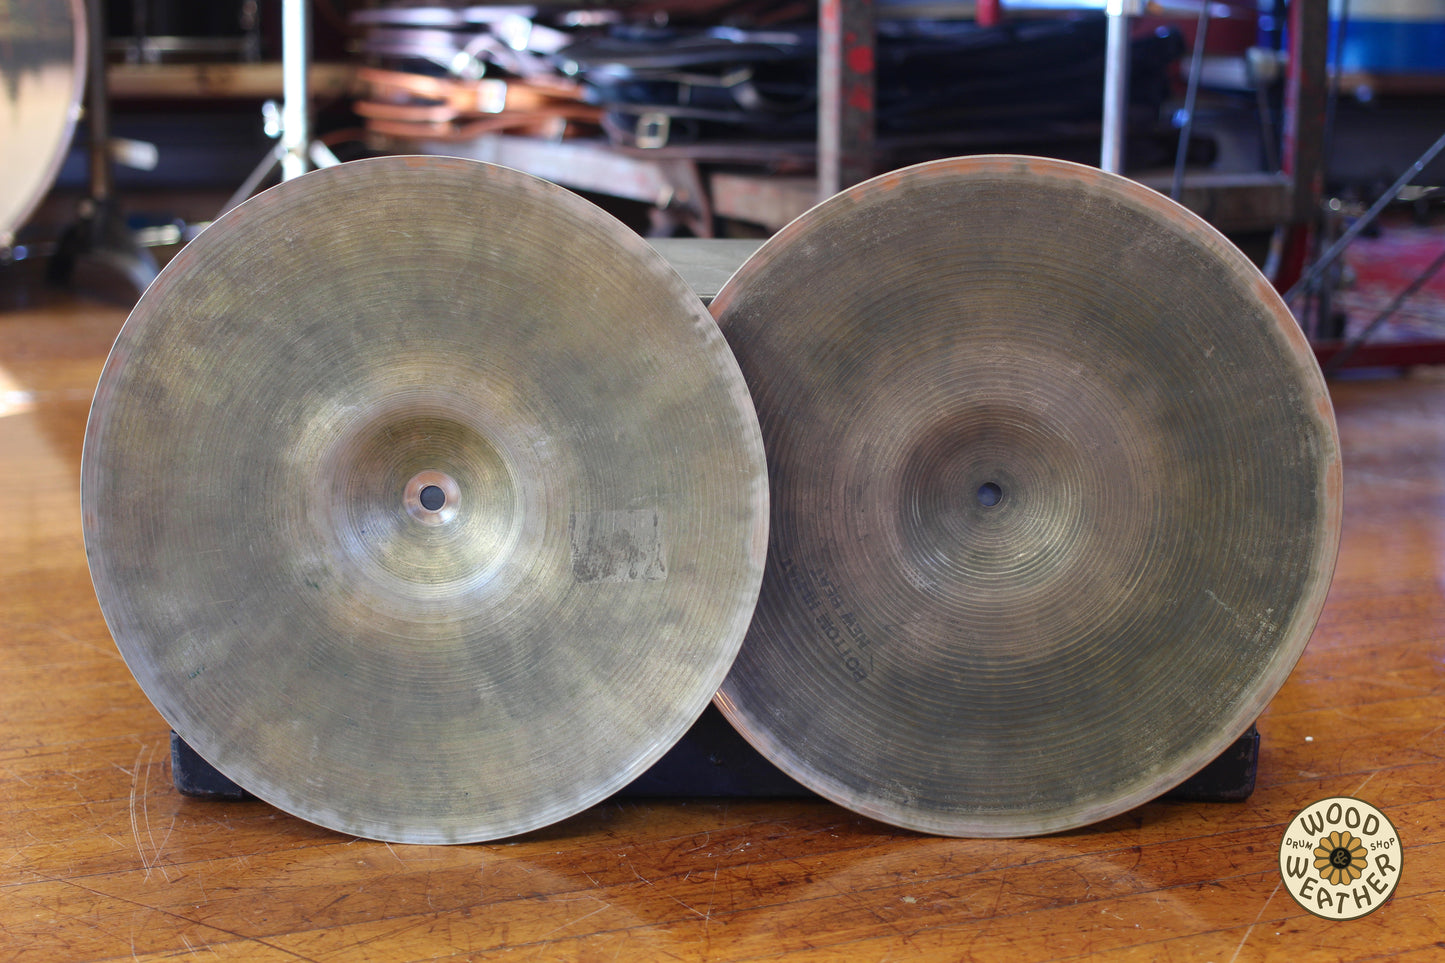 1960s A. Zildjian New Beat 14" Hi-Hat Cymbals 865/1170g